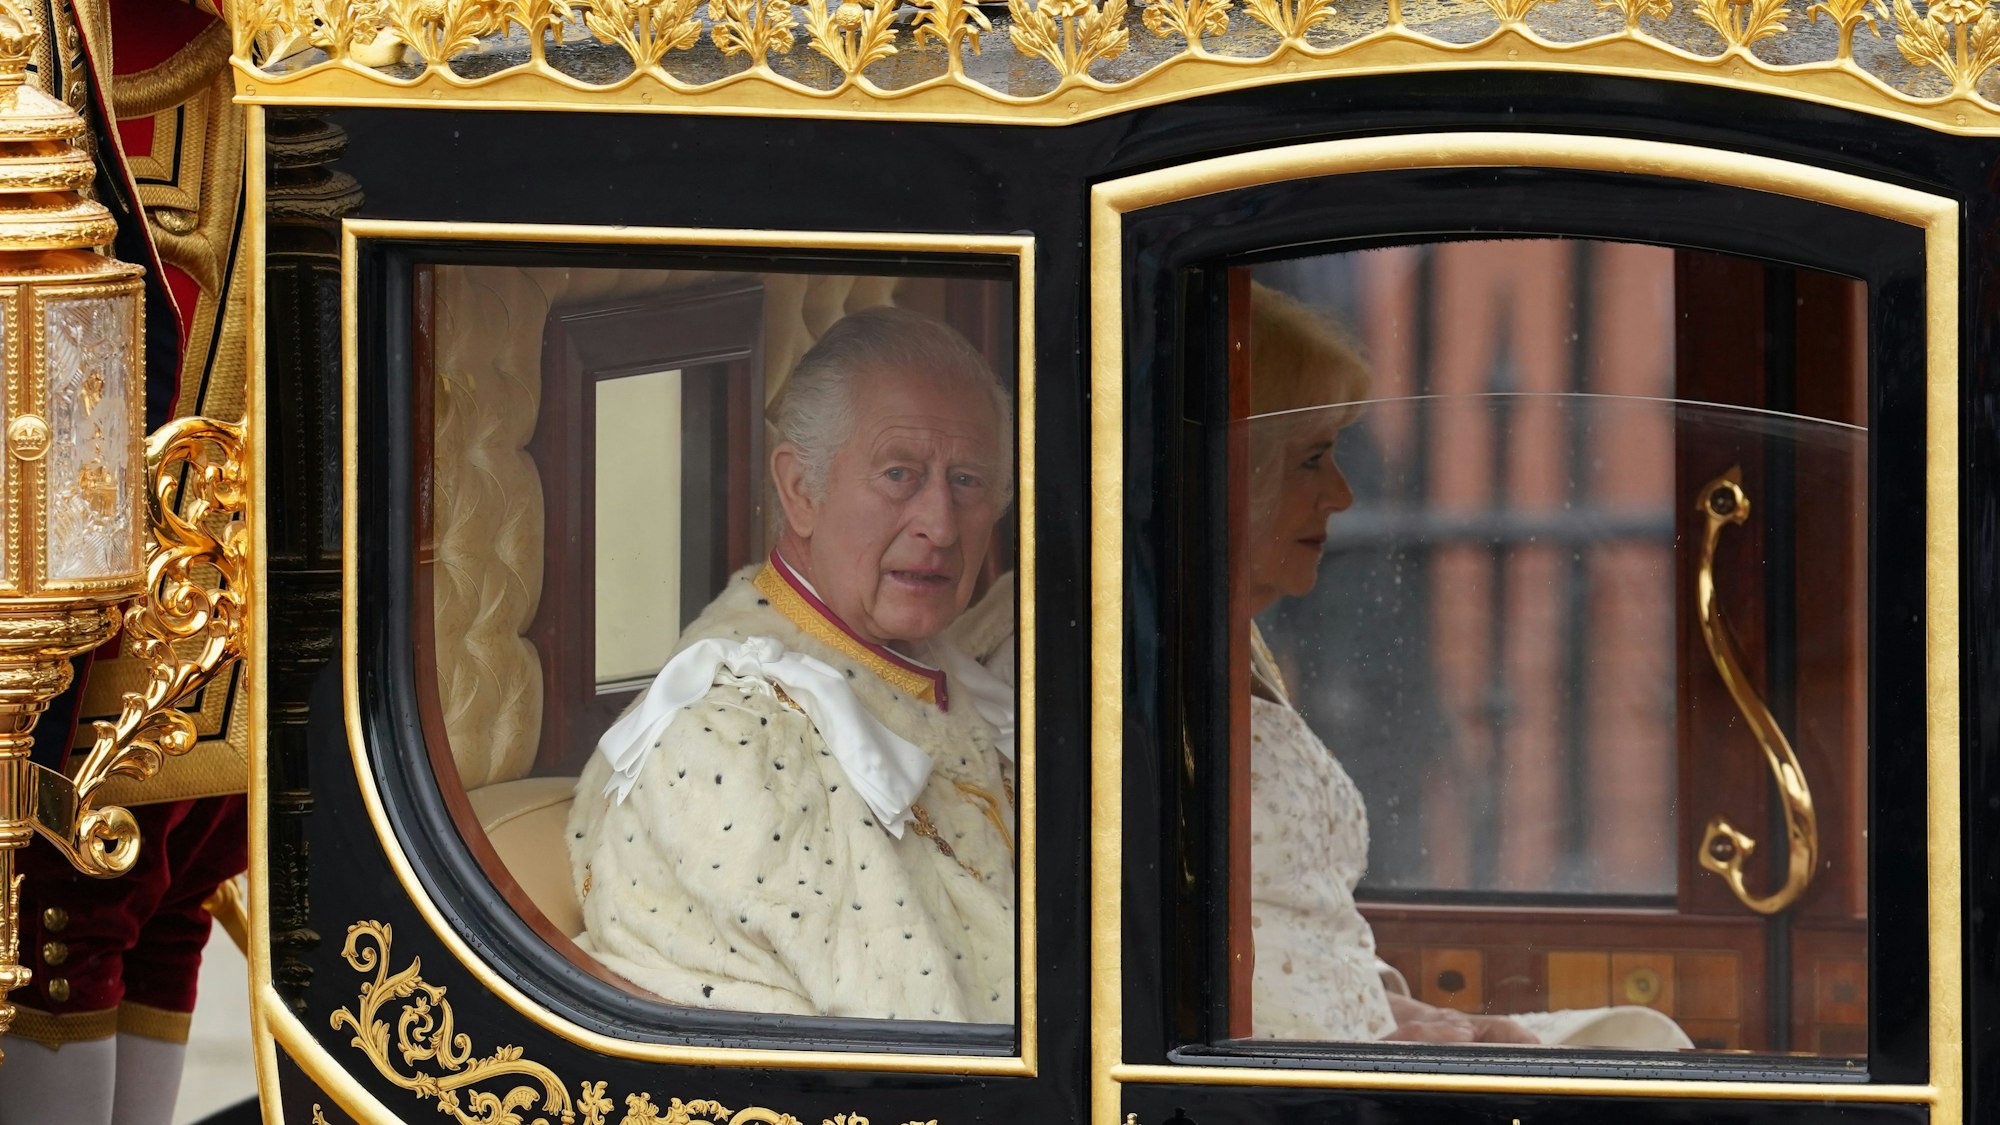 Seit der Krönung von Charles III. vor einem Jahr werden im Commonwealth die Stimmen lauter, die die Monarchie abschaffen wollen.